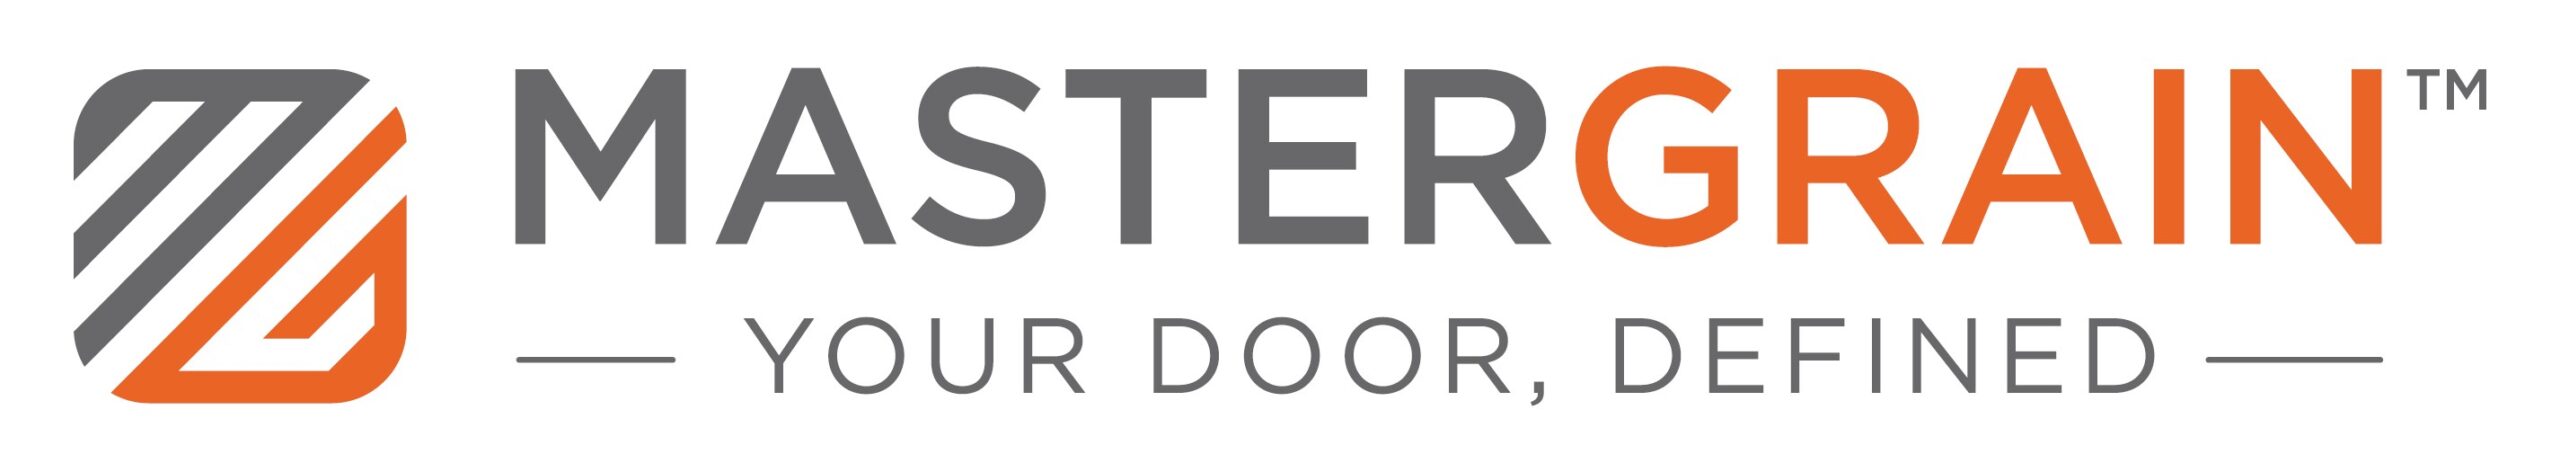 MasterGrain Doors